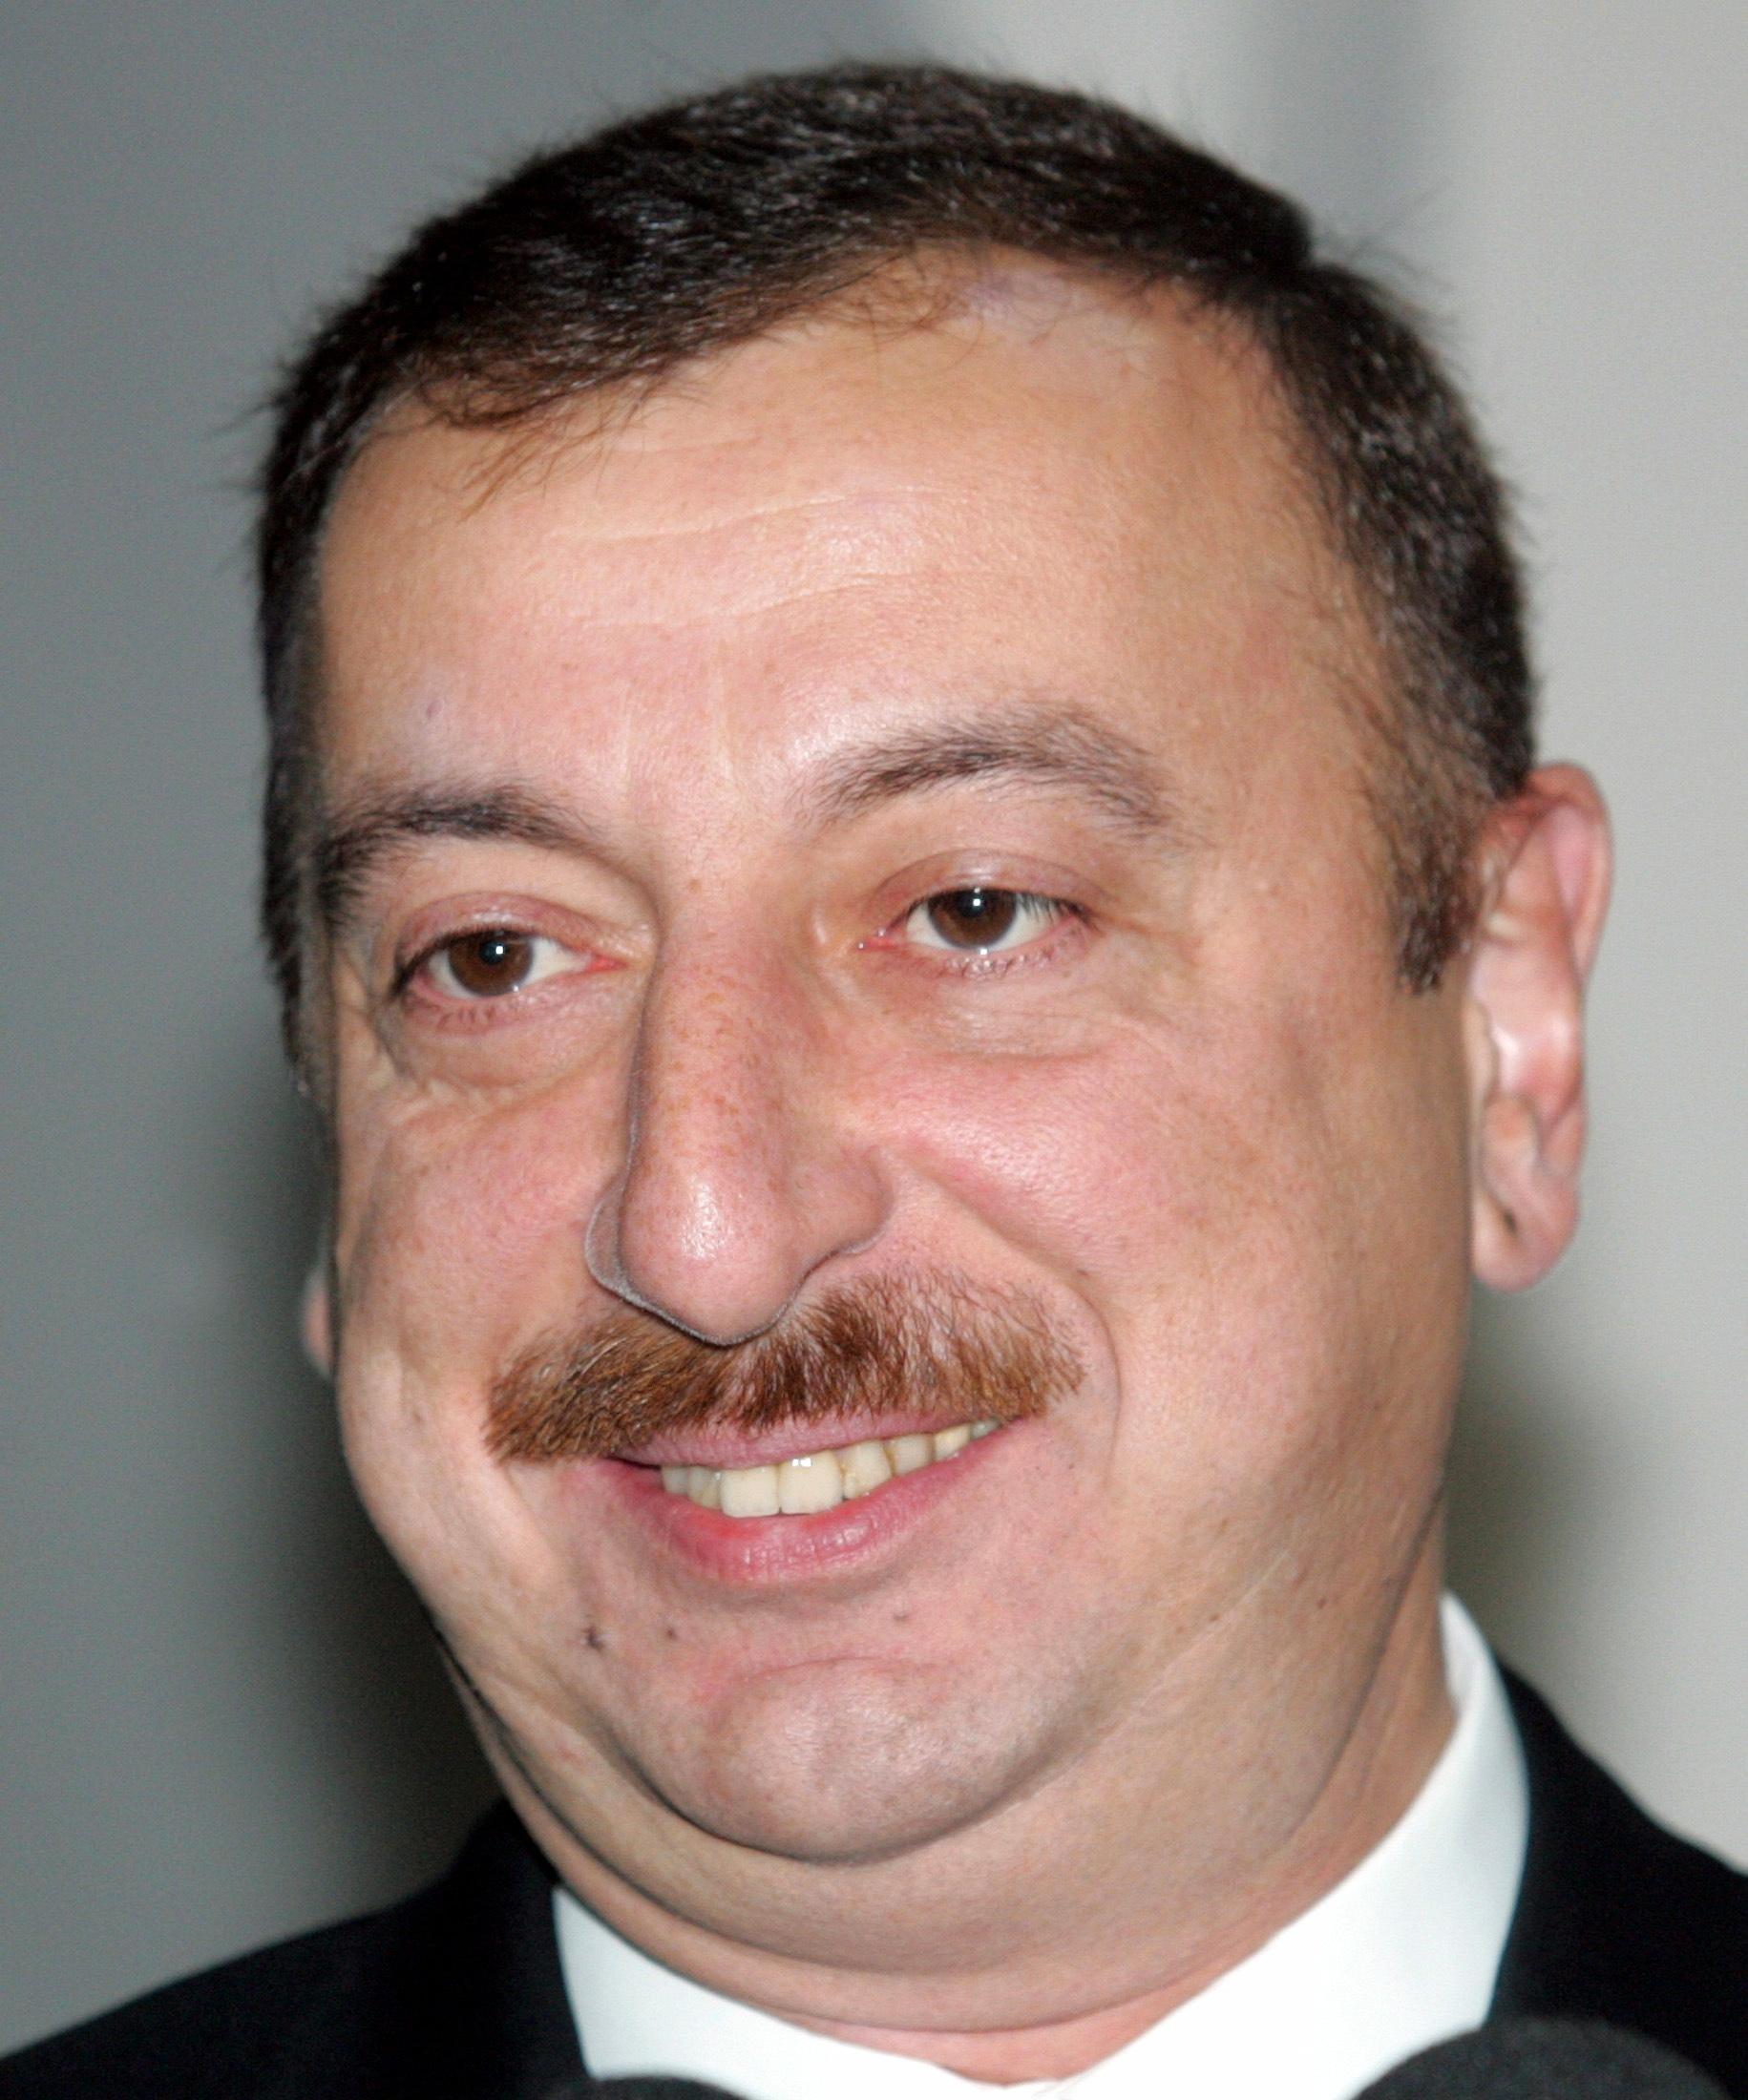 Aserbajdsjans president Ilham Alijev og hans regime skal ha bestukket politikere i Europarådets parlamentarikerforsamling for å stoppe kritikk av omfattende brudd på menneskerettighetene.